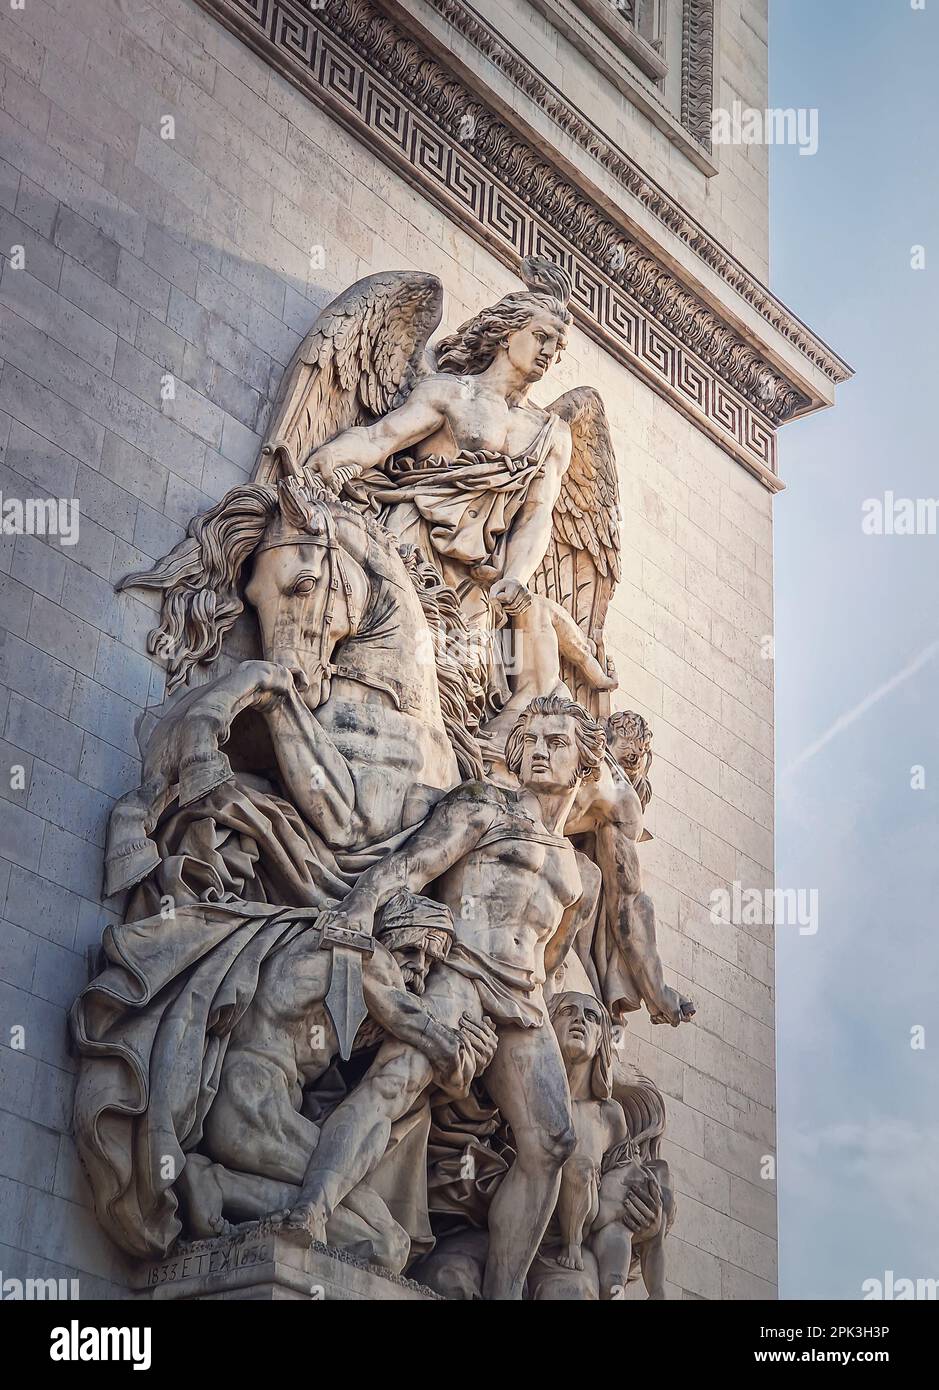 Nahaufnahme architektonischer Details des Triumphbogens, Paris, Frankreich. La Resistance de 1814 schmückt eine Säule des Triumphbogens Stockfoto